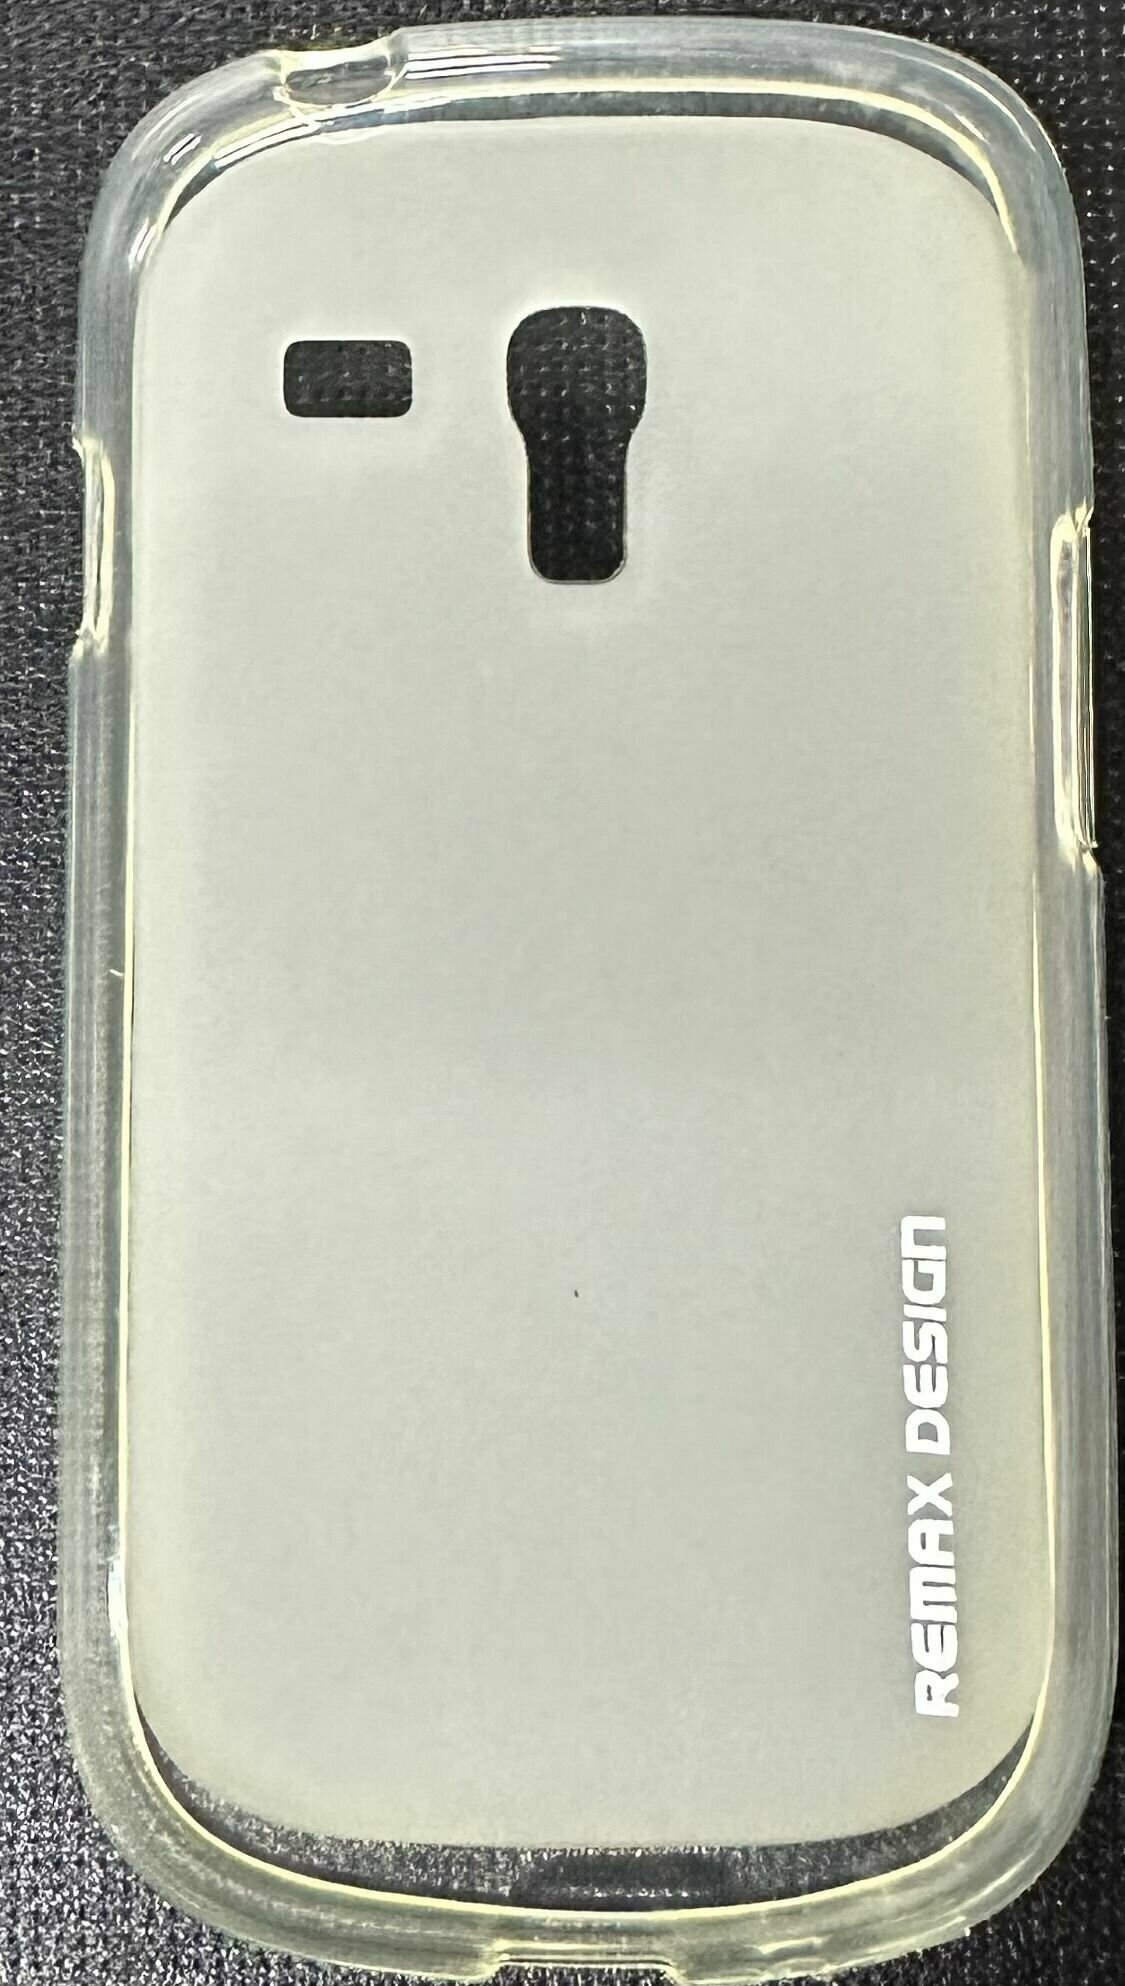 Чехол накладка силиконовая для Samsung i8190 GALAXY S3 MINI, белый-матовый +защитная пленка на экран в подарок